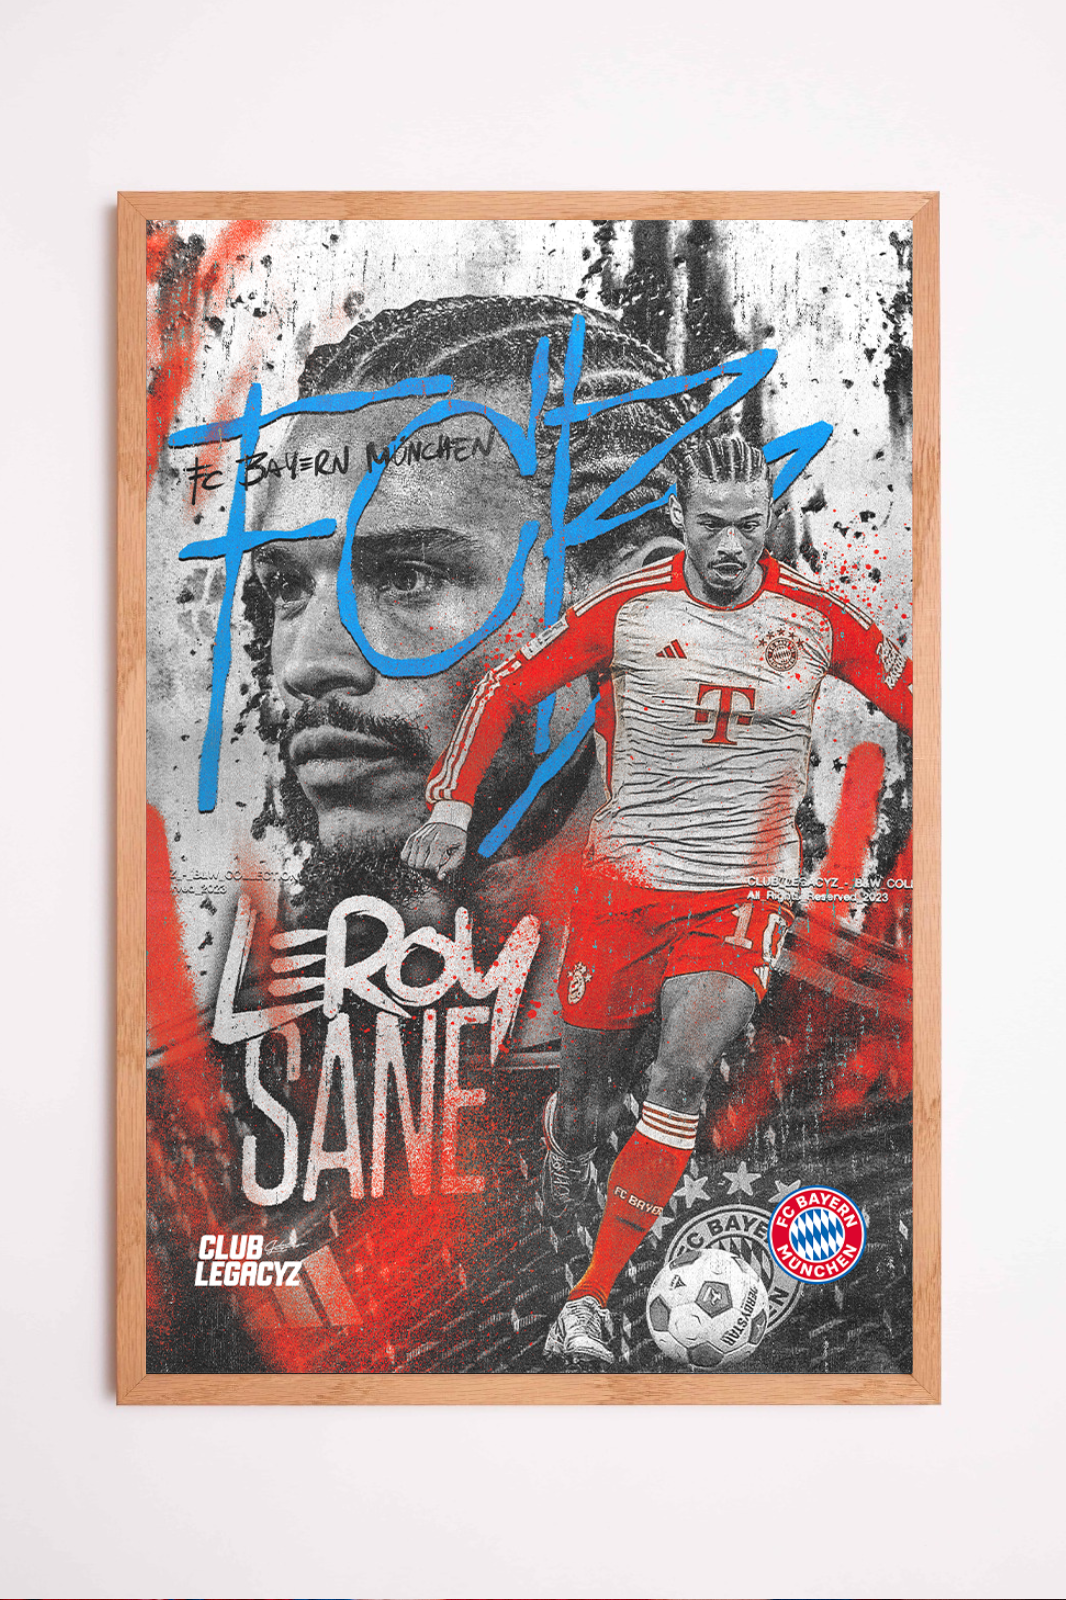 FC Bayern München - Leroy Sané Black & White Poster limited to 100